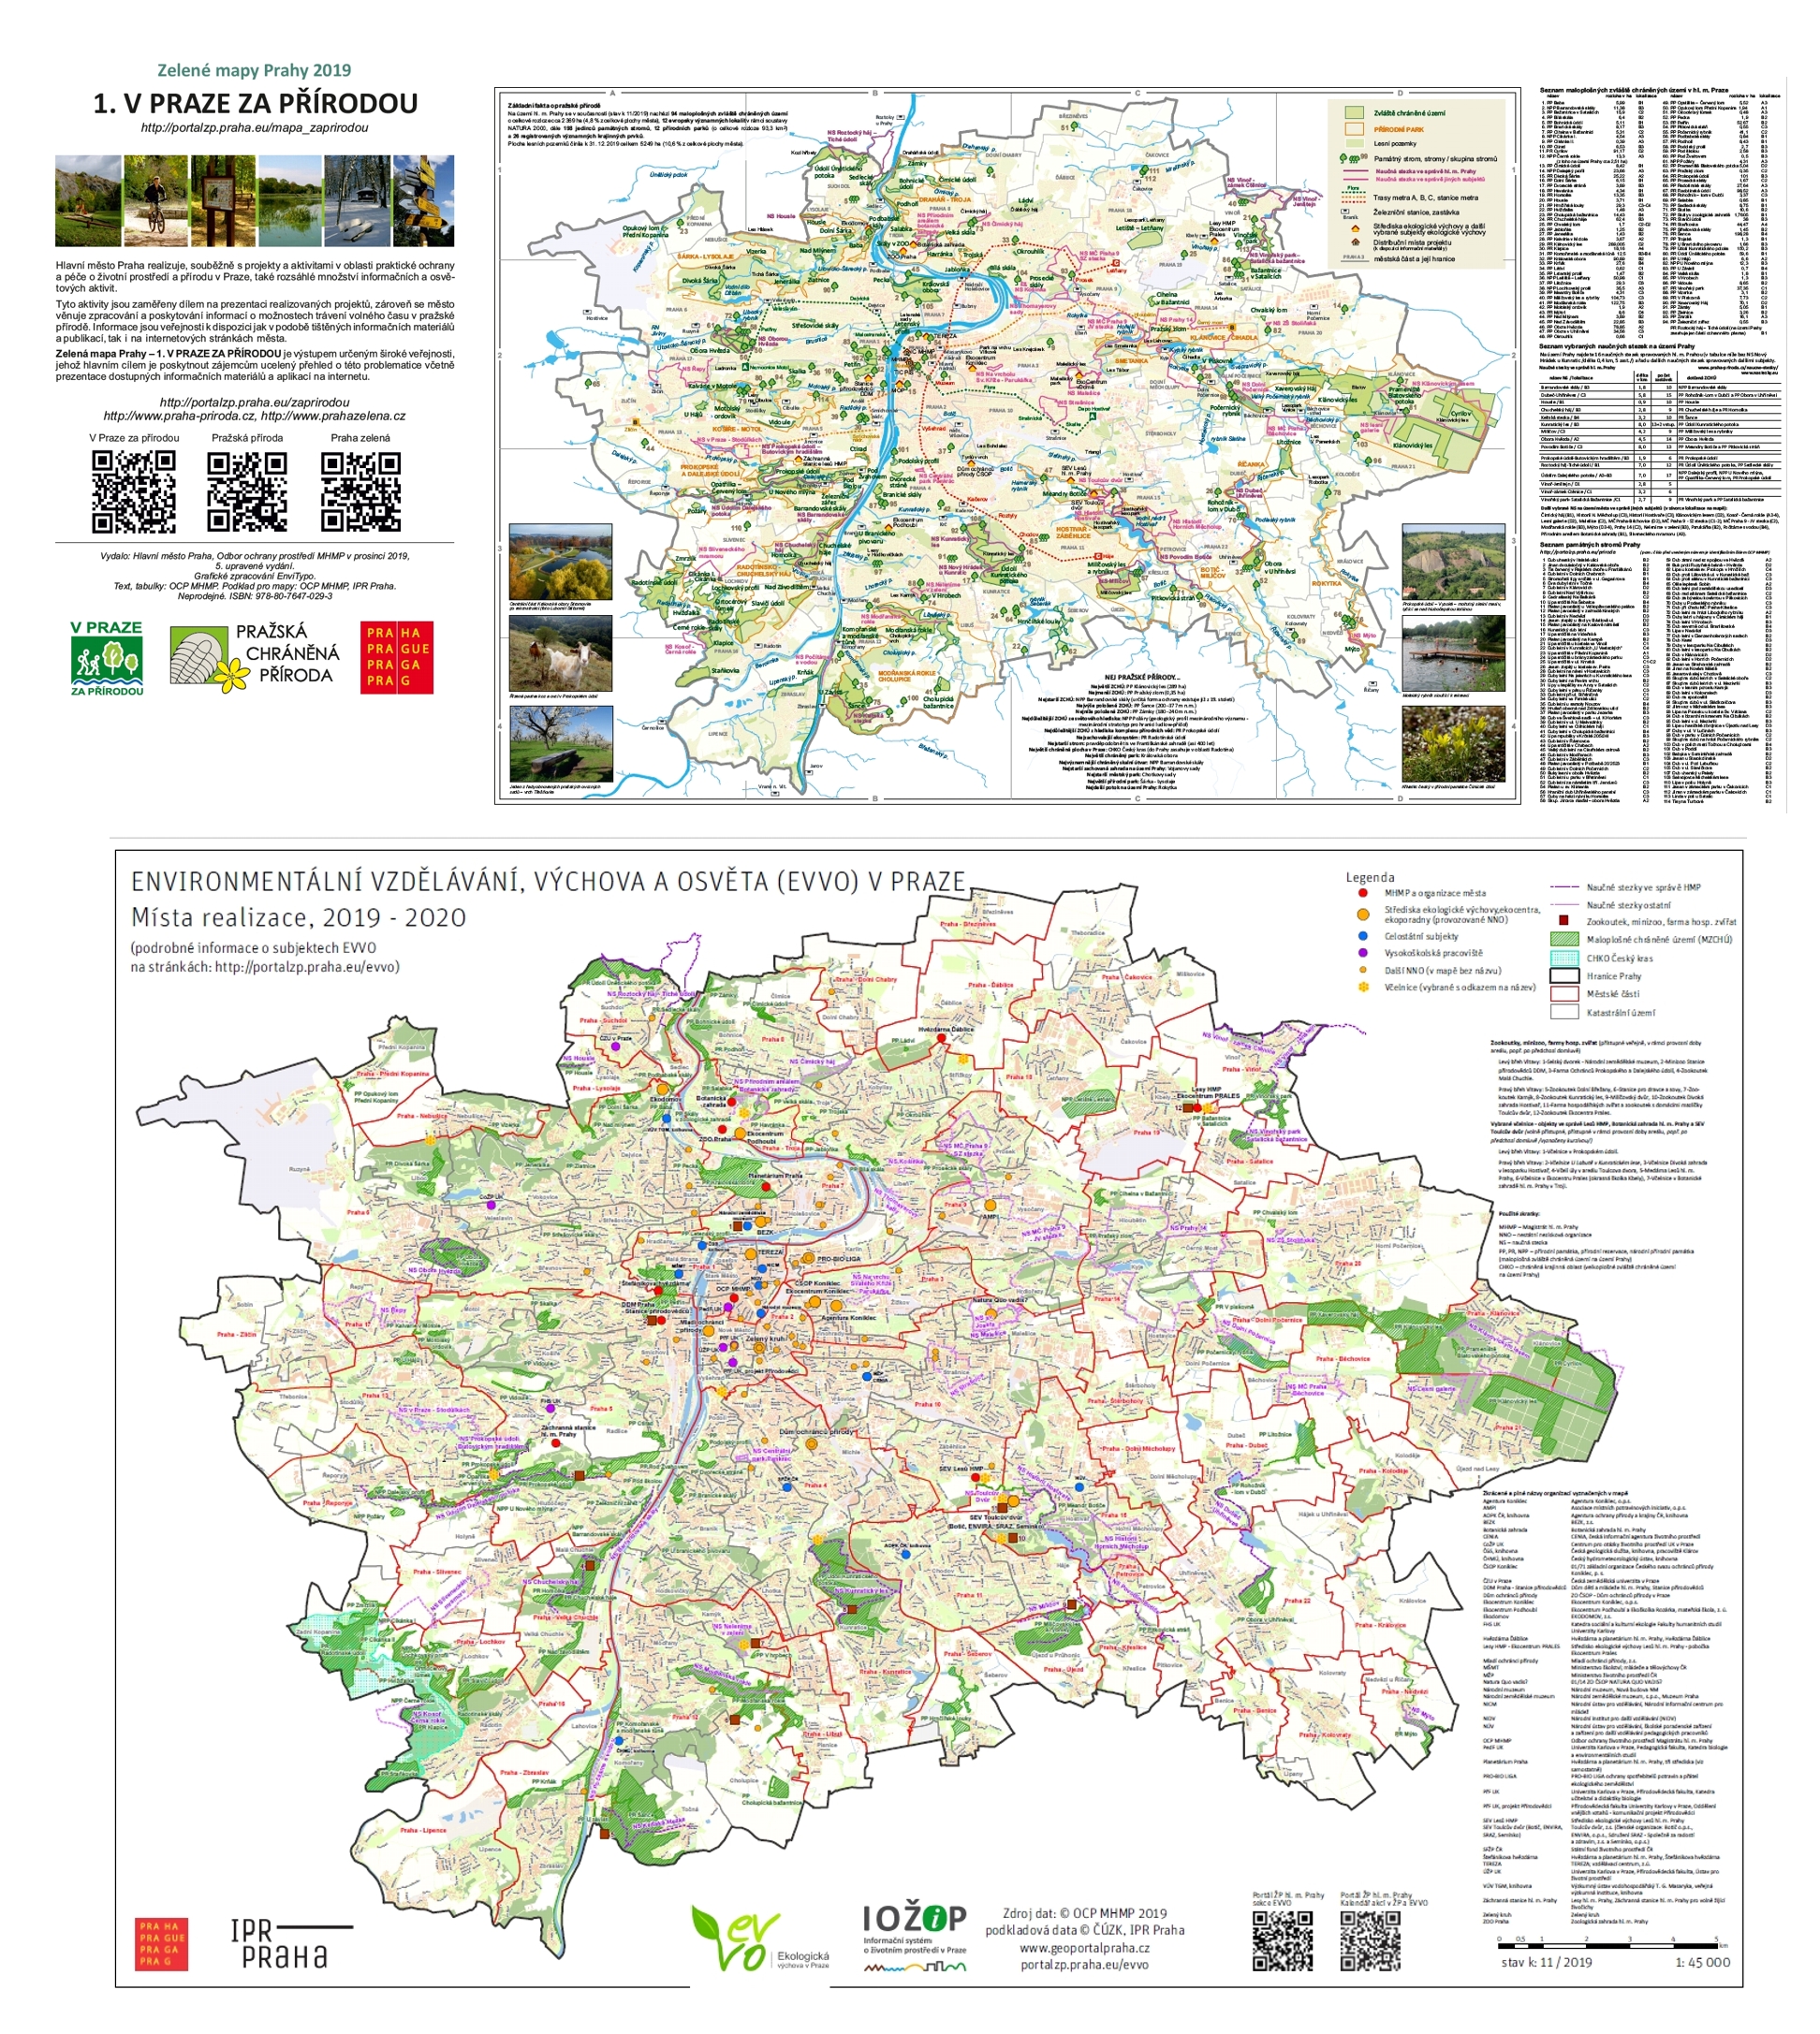 3117742_mapové informační materiály k problematice životního prostředí a pražské přírody, 2020, ilustr. obr.